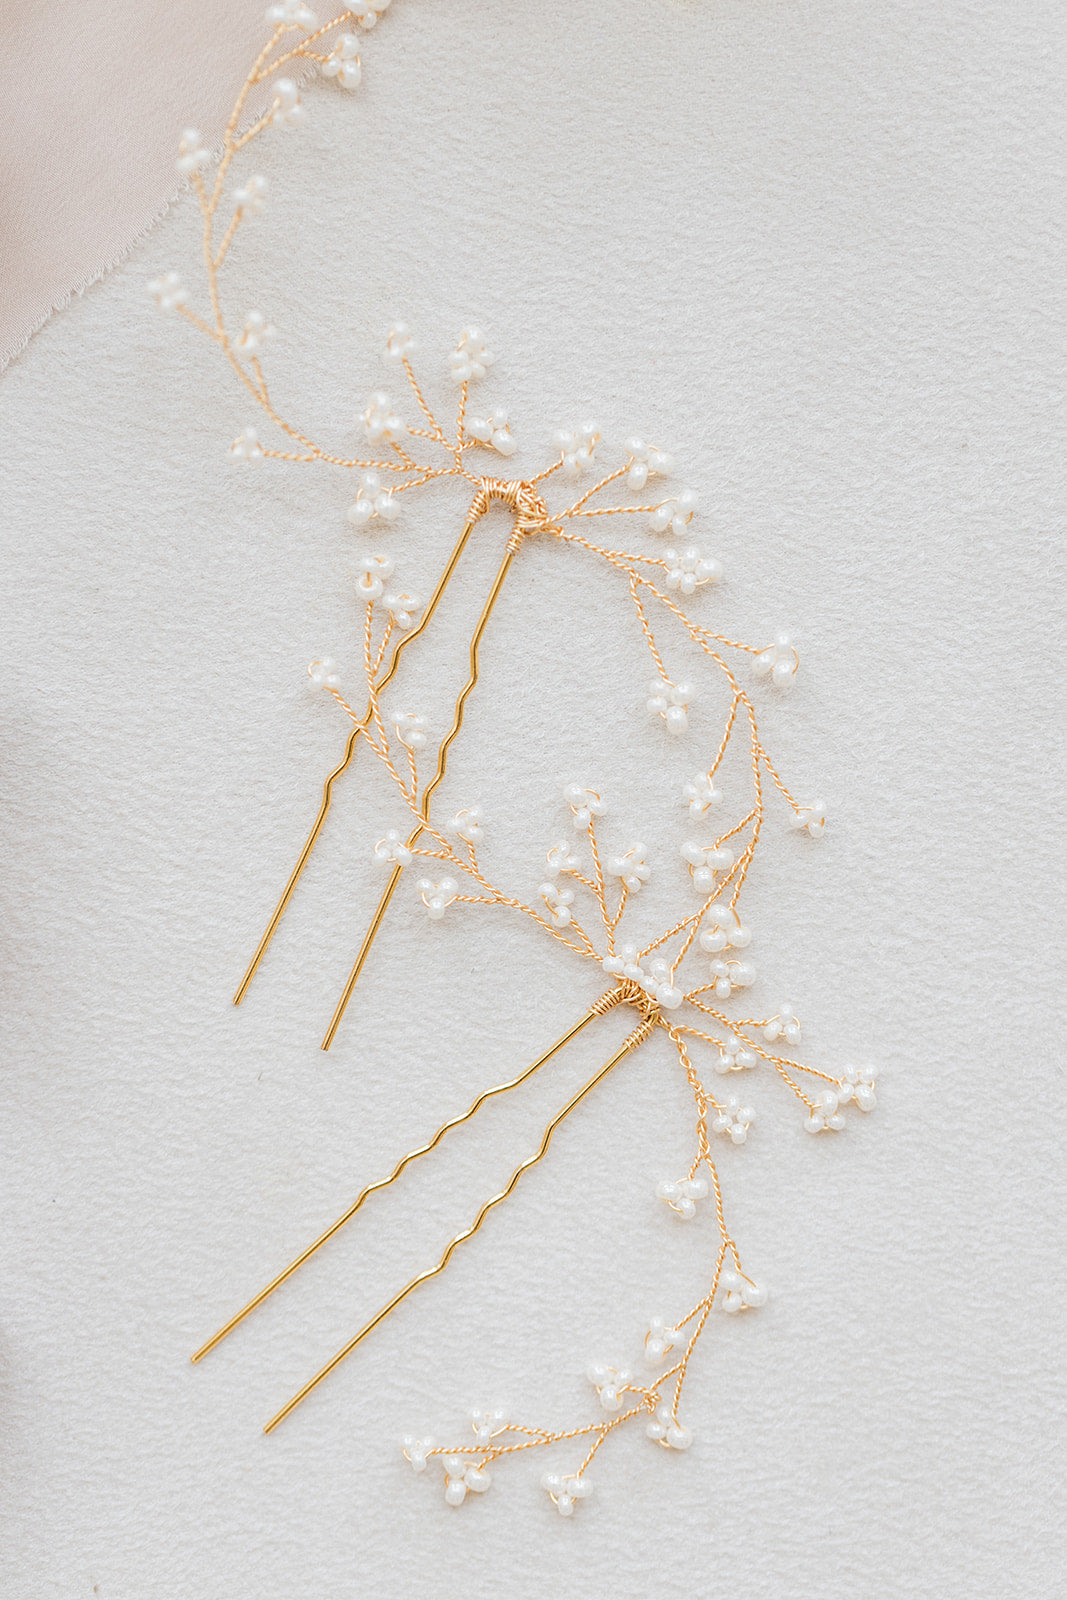 pic à cheveux pour mariage sur un table blanche avec des perles rocailles et du fil dorée